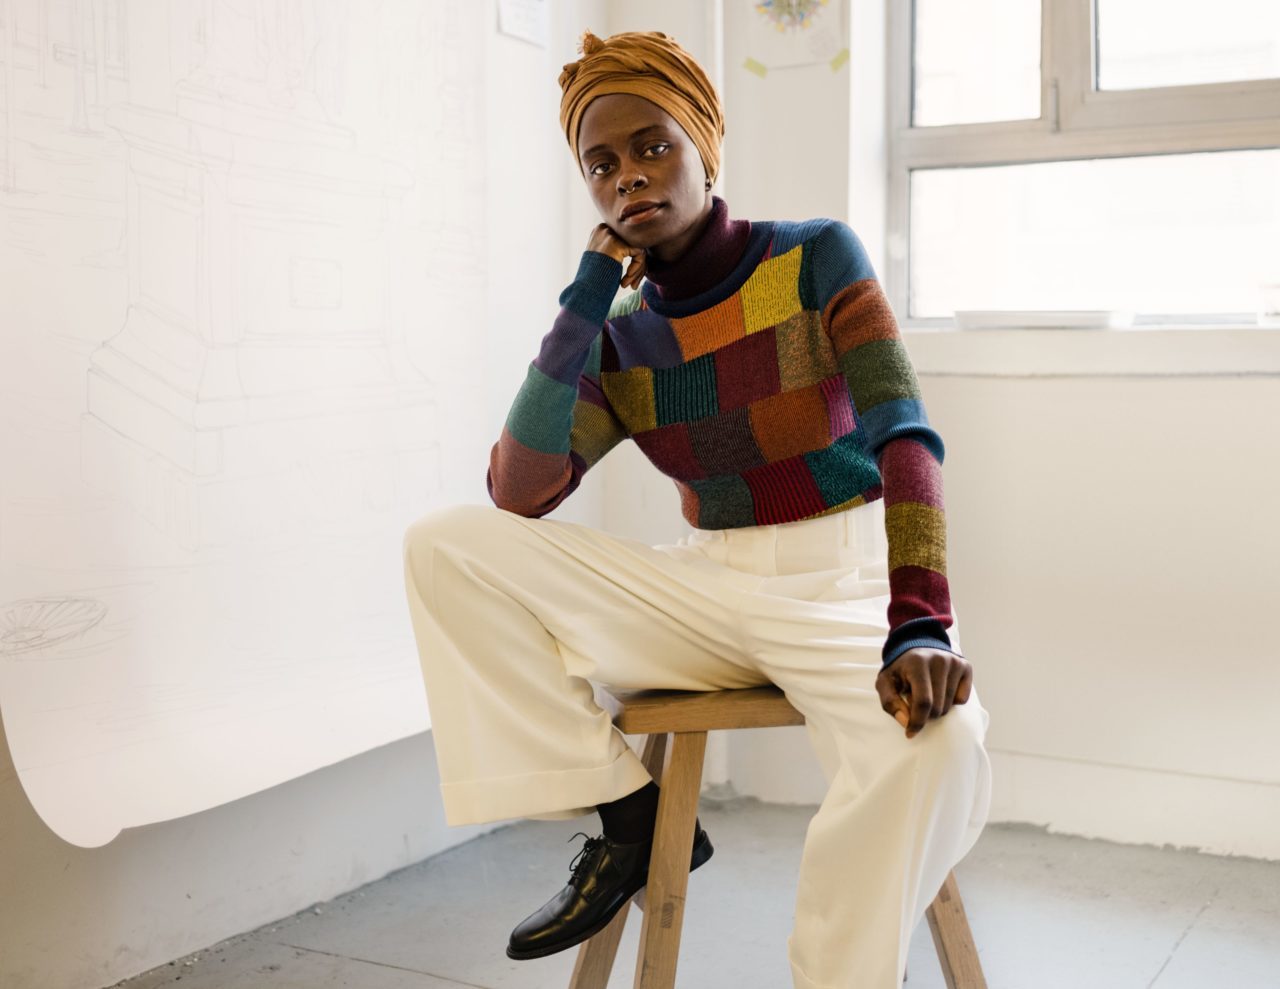 African Artist Spotlight Series: Toyin Ojih Odutola's Unforgettable Portraits | Toyin Ojih Odutola